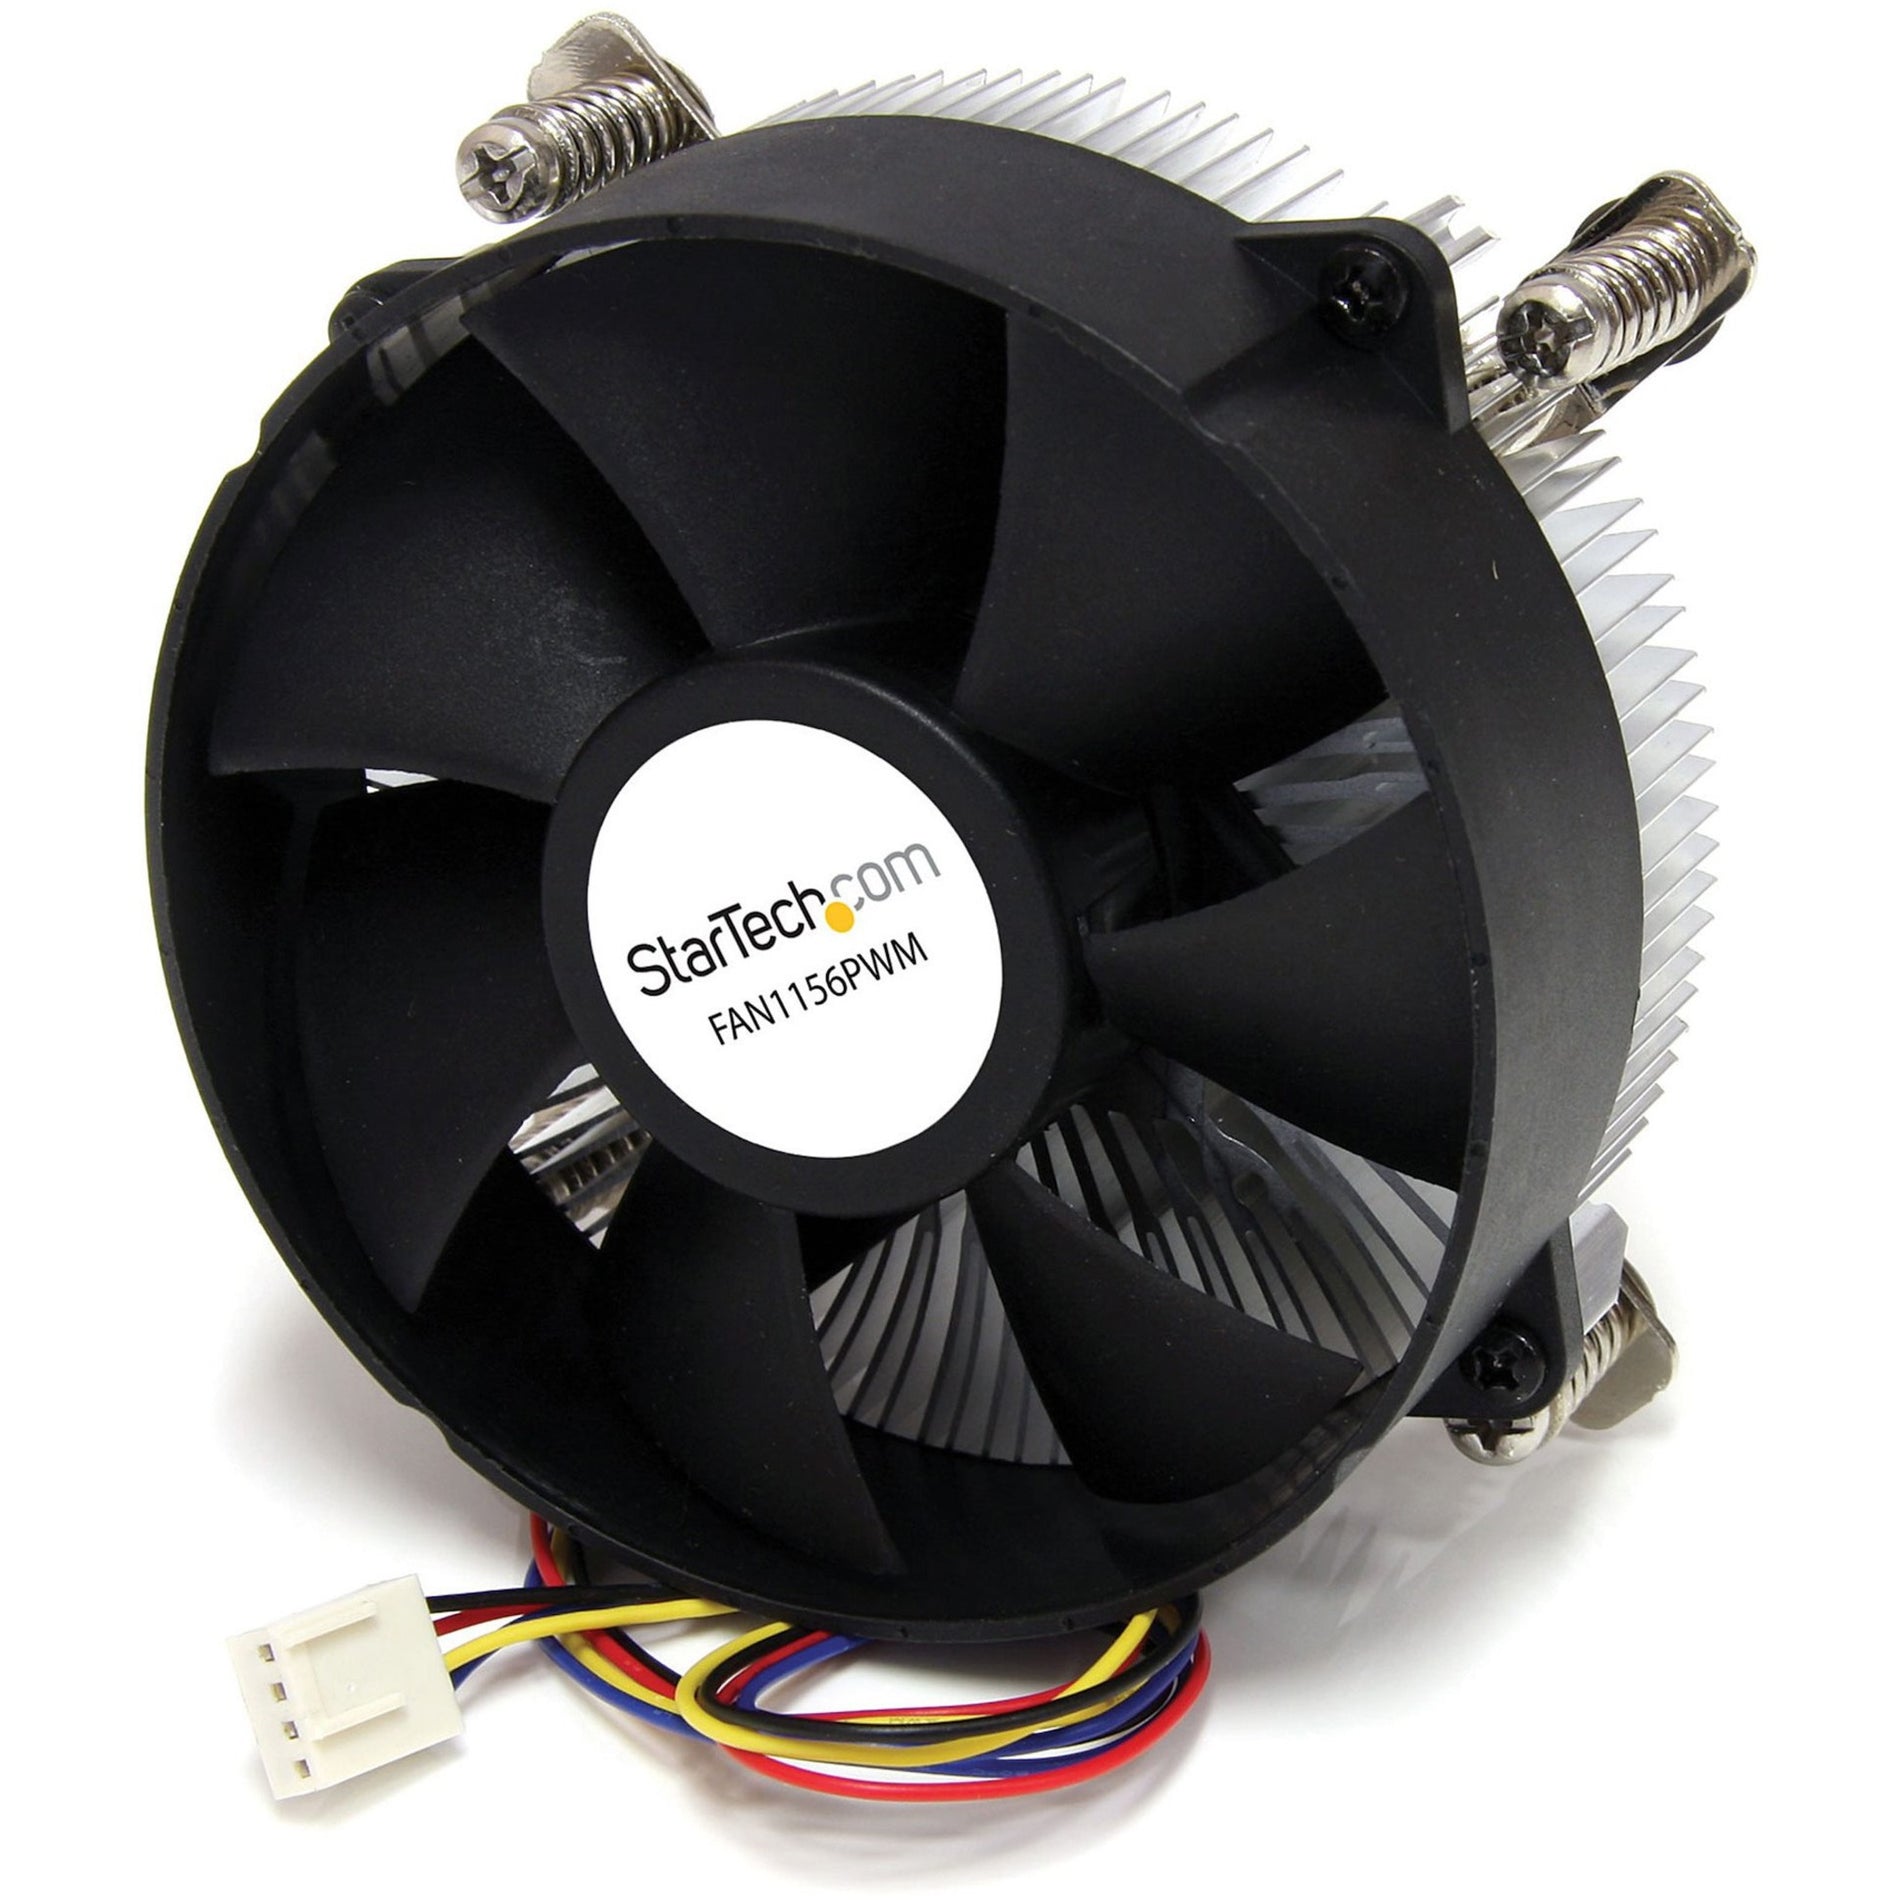 StarTech.com FAN1156PWM 95mm CPU Cooler Fan with Heatsink for Socket LGA1156/1155 with PWM, 2-Year Warranty, 65.60CFM Airflow